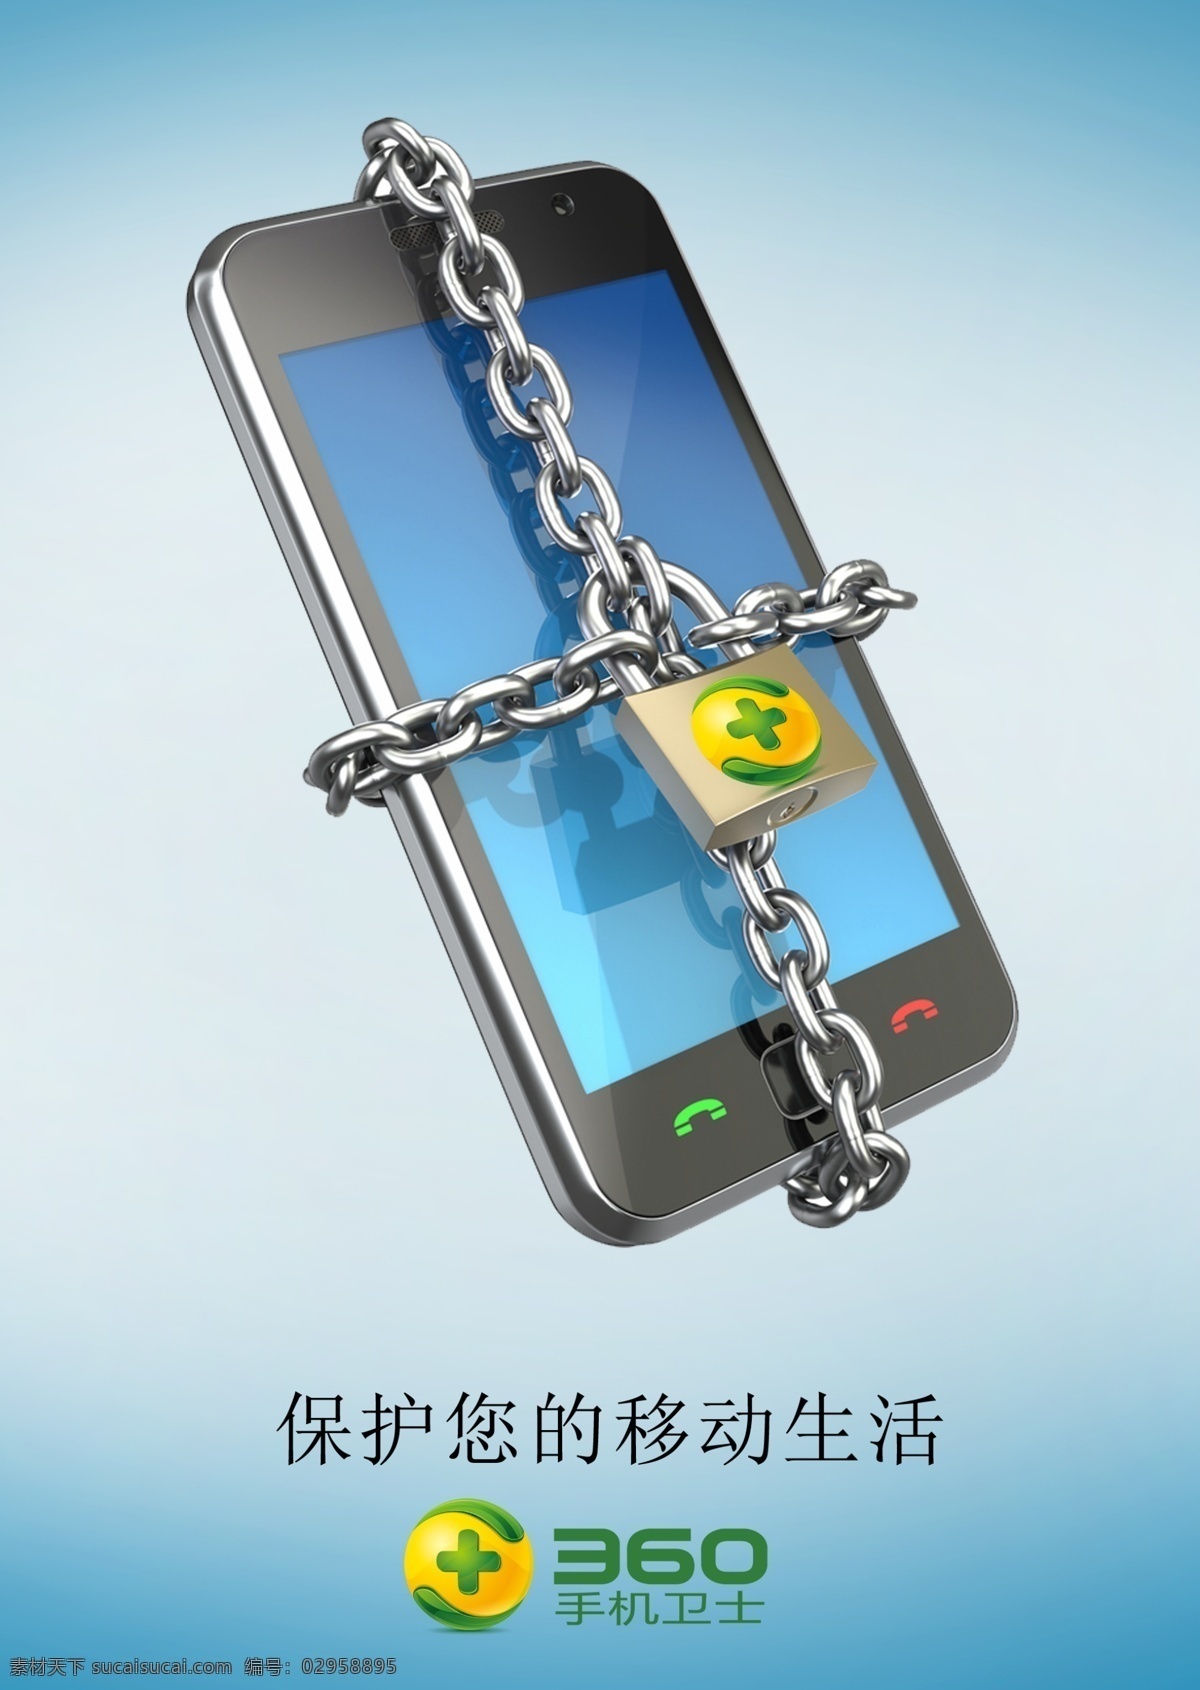 安全锁 手机 卫士 手机安全 手机app 海报 招贴 安全 防护 个人信息 锁 锁链 保护 招贴设计 青色 天蓝色